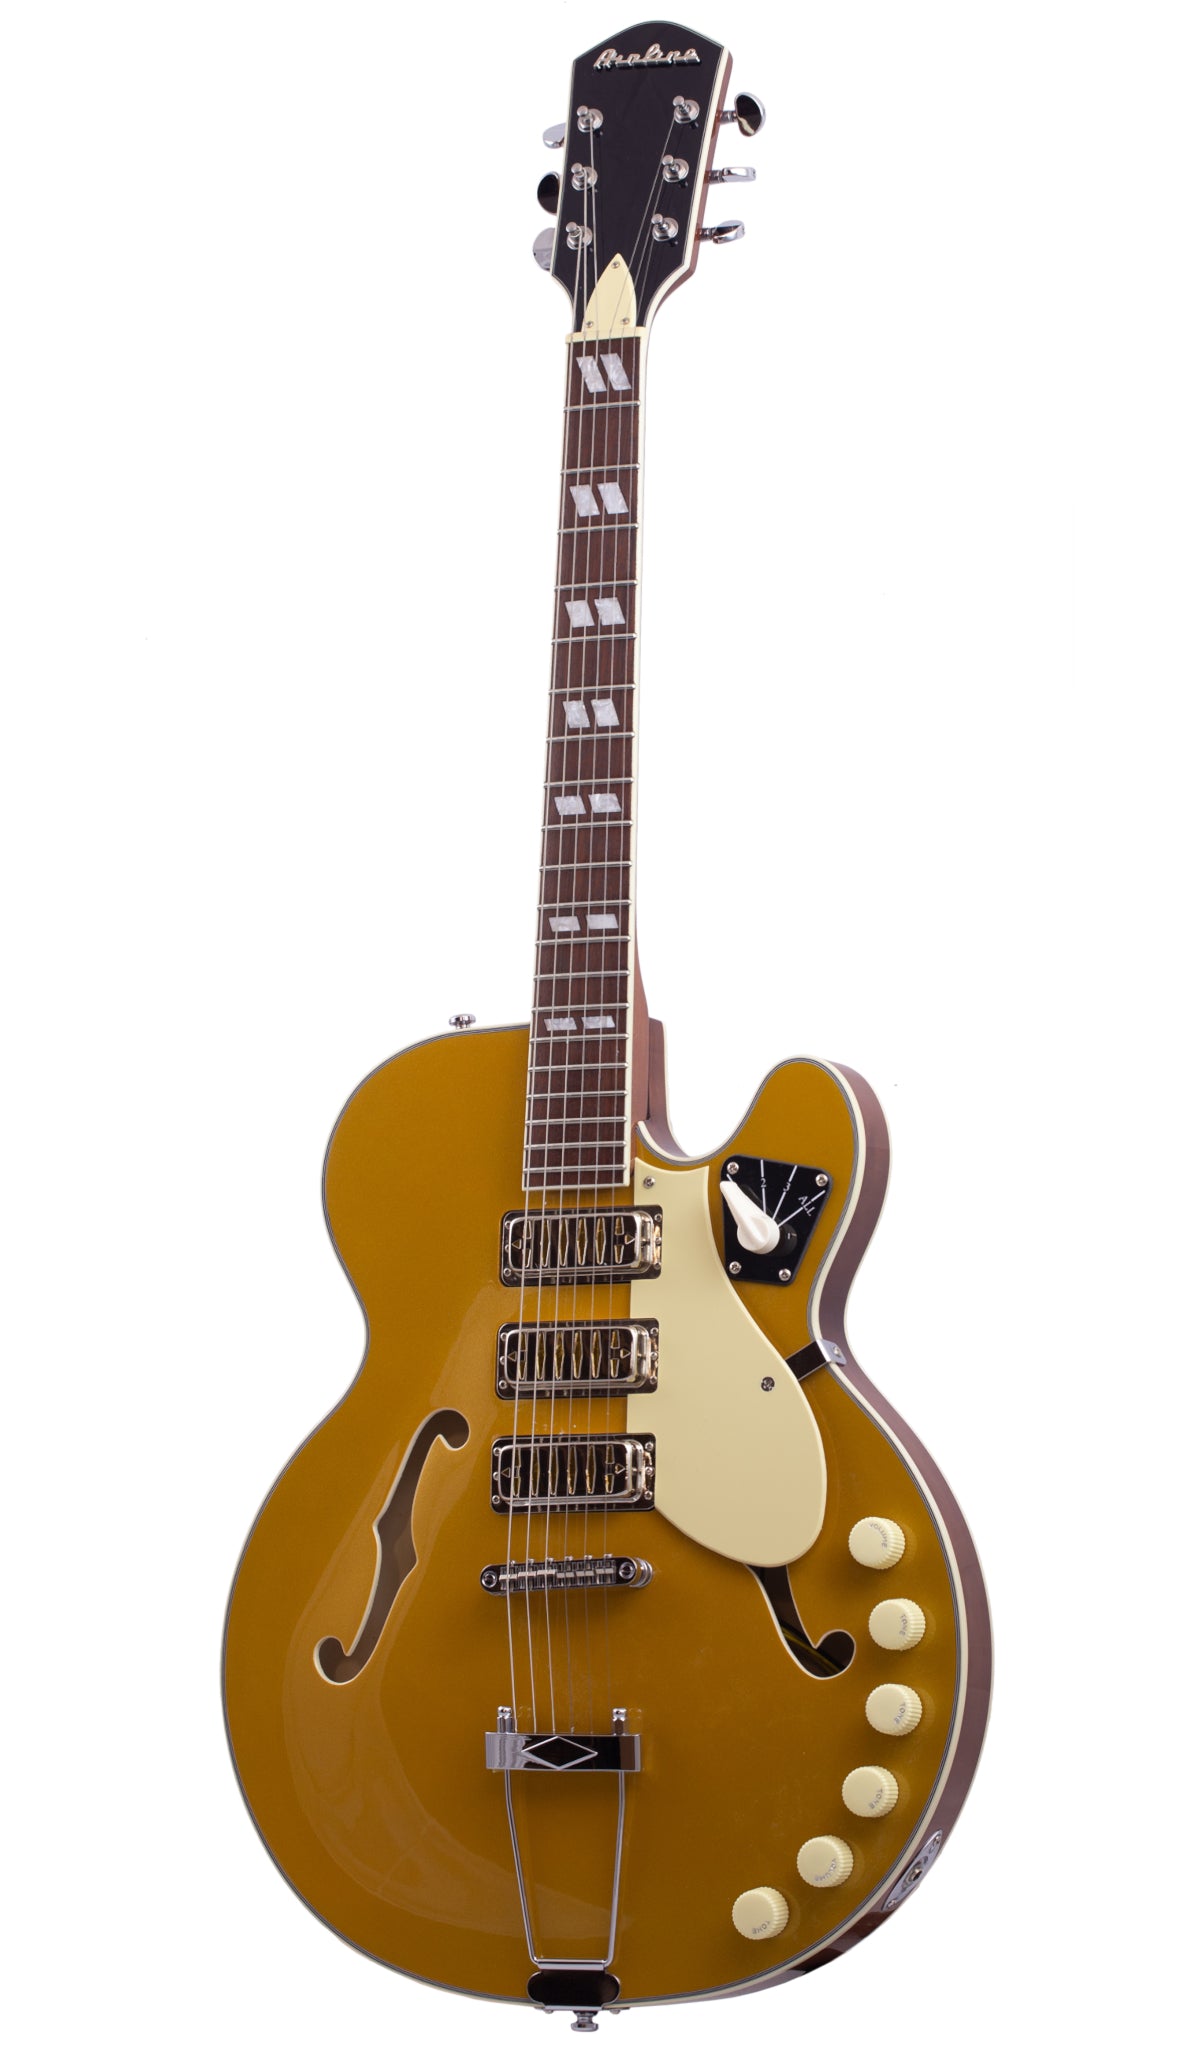 Eastwood Guitars Airline H59 #color_goldtop